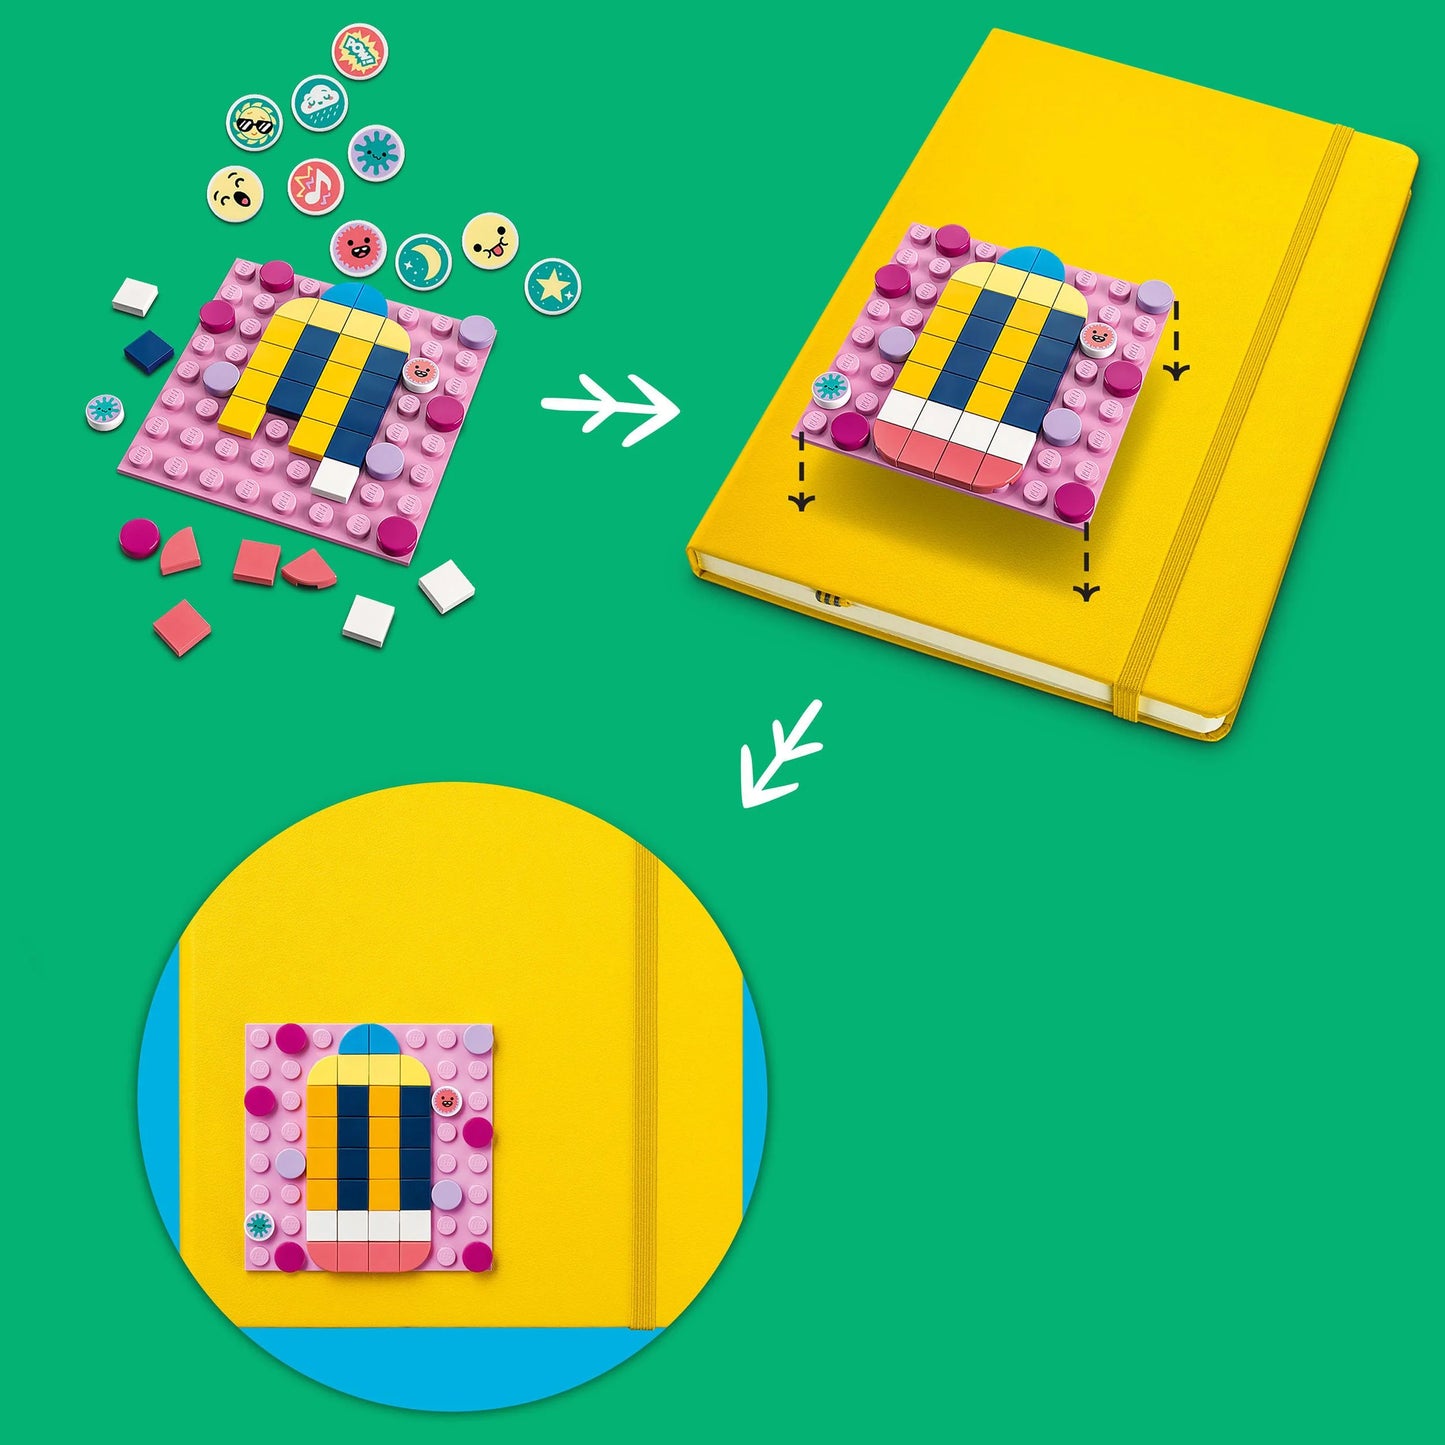 Zelfklevende patches megaset-LEGO Dots